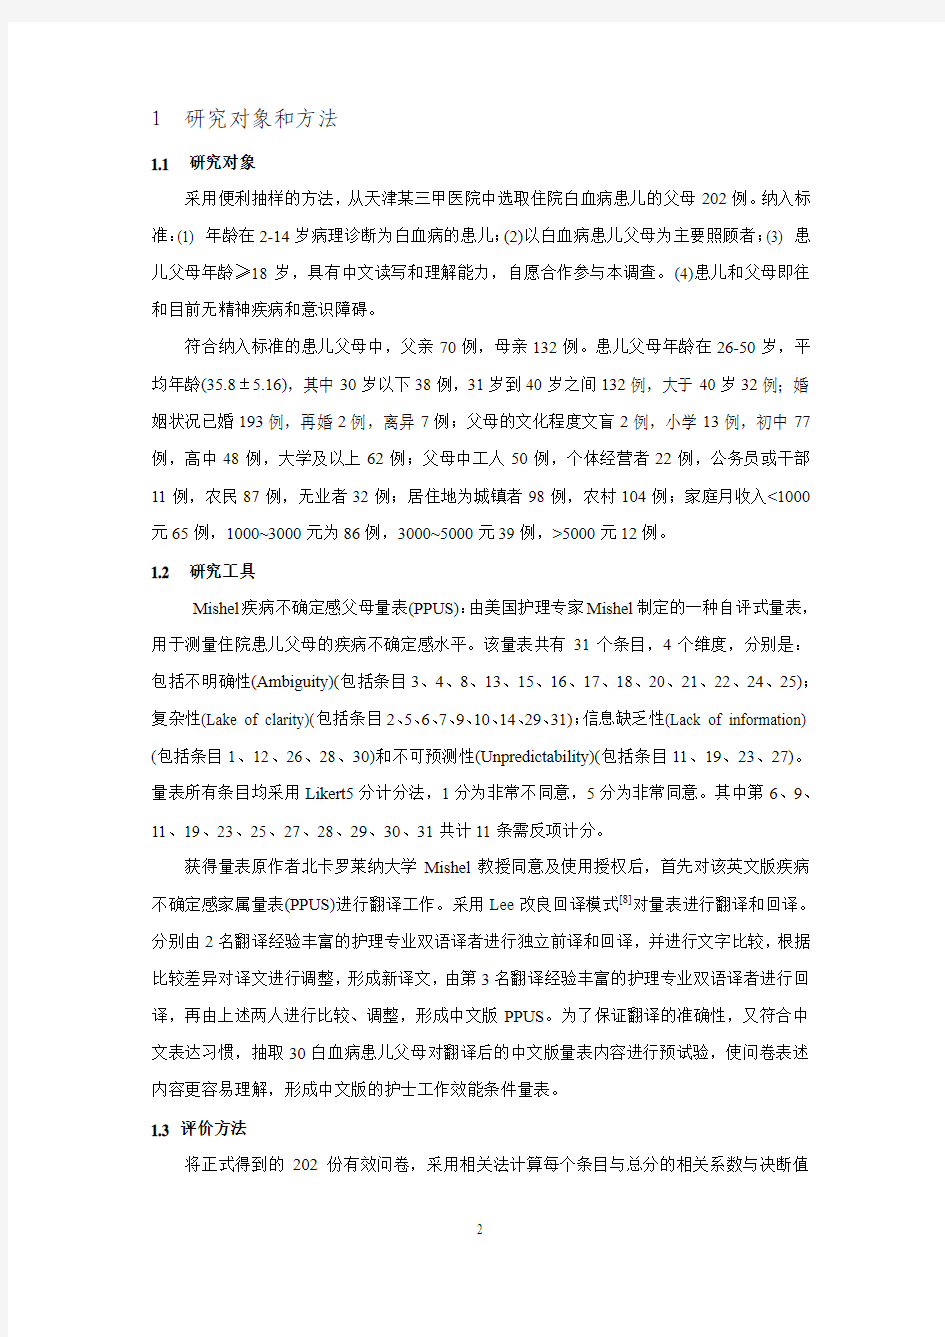 中文版Mishel疾病不确定感父母量表的信效度研究